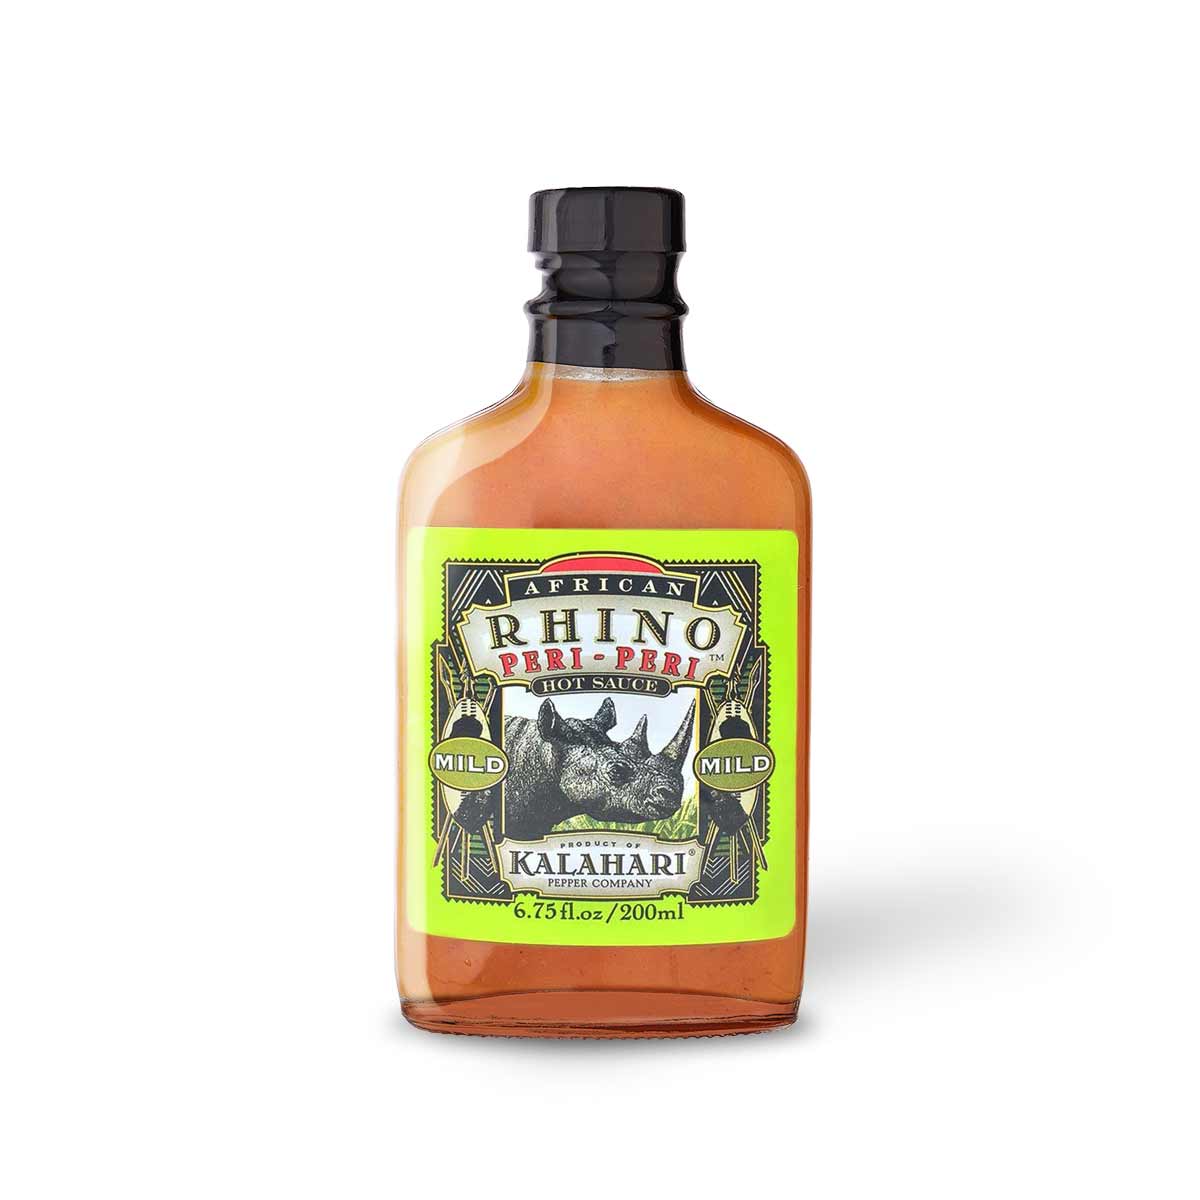 African Rhino - Mild Peri-Peri Pepper - Hot Sauce